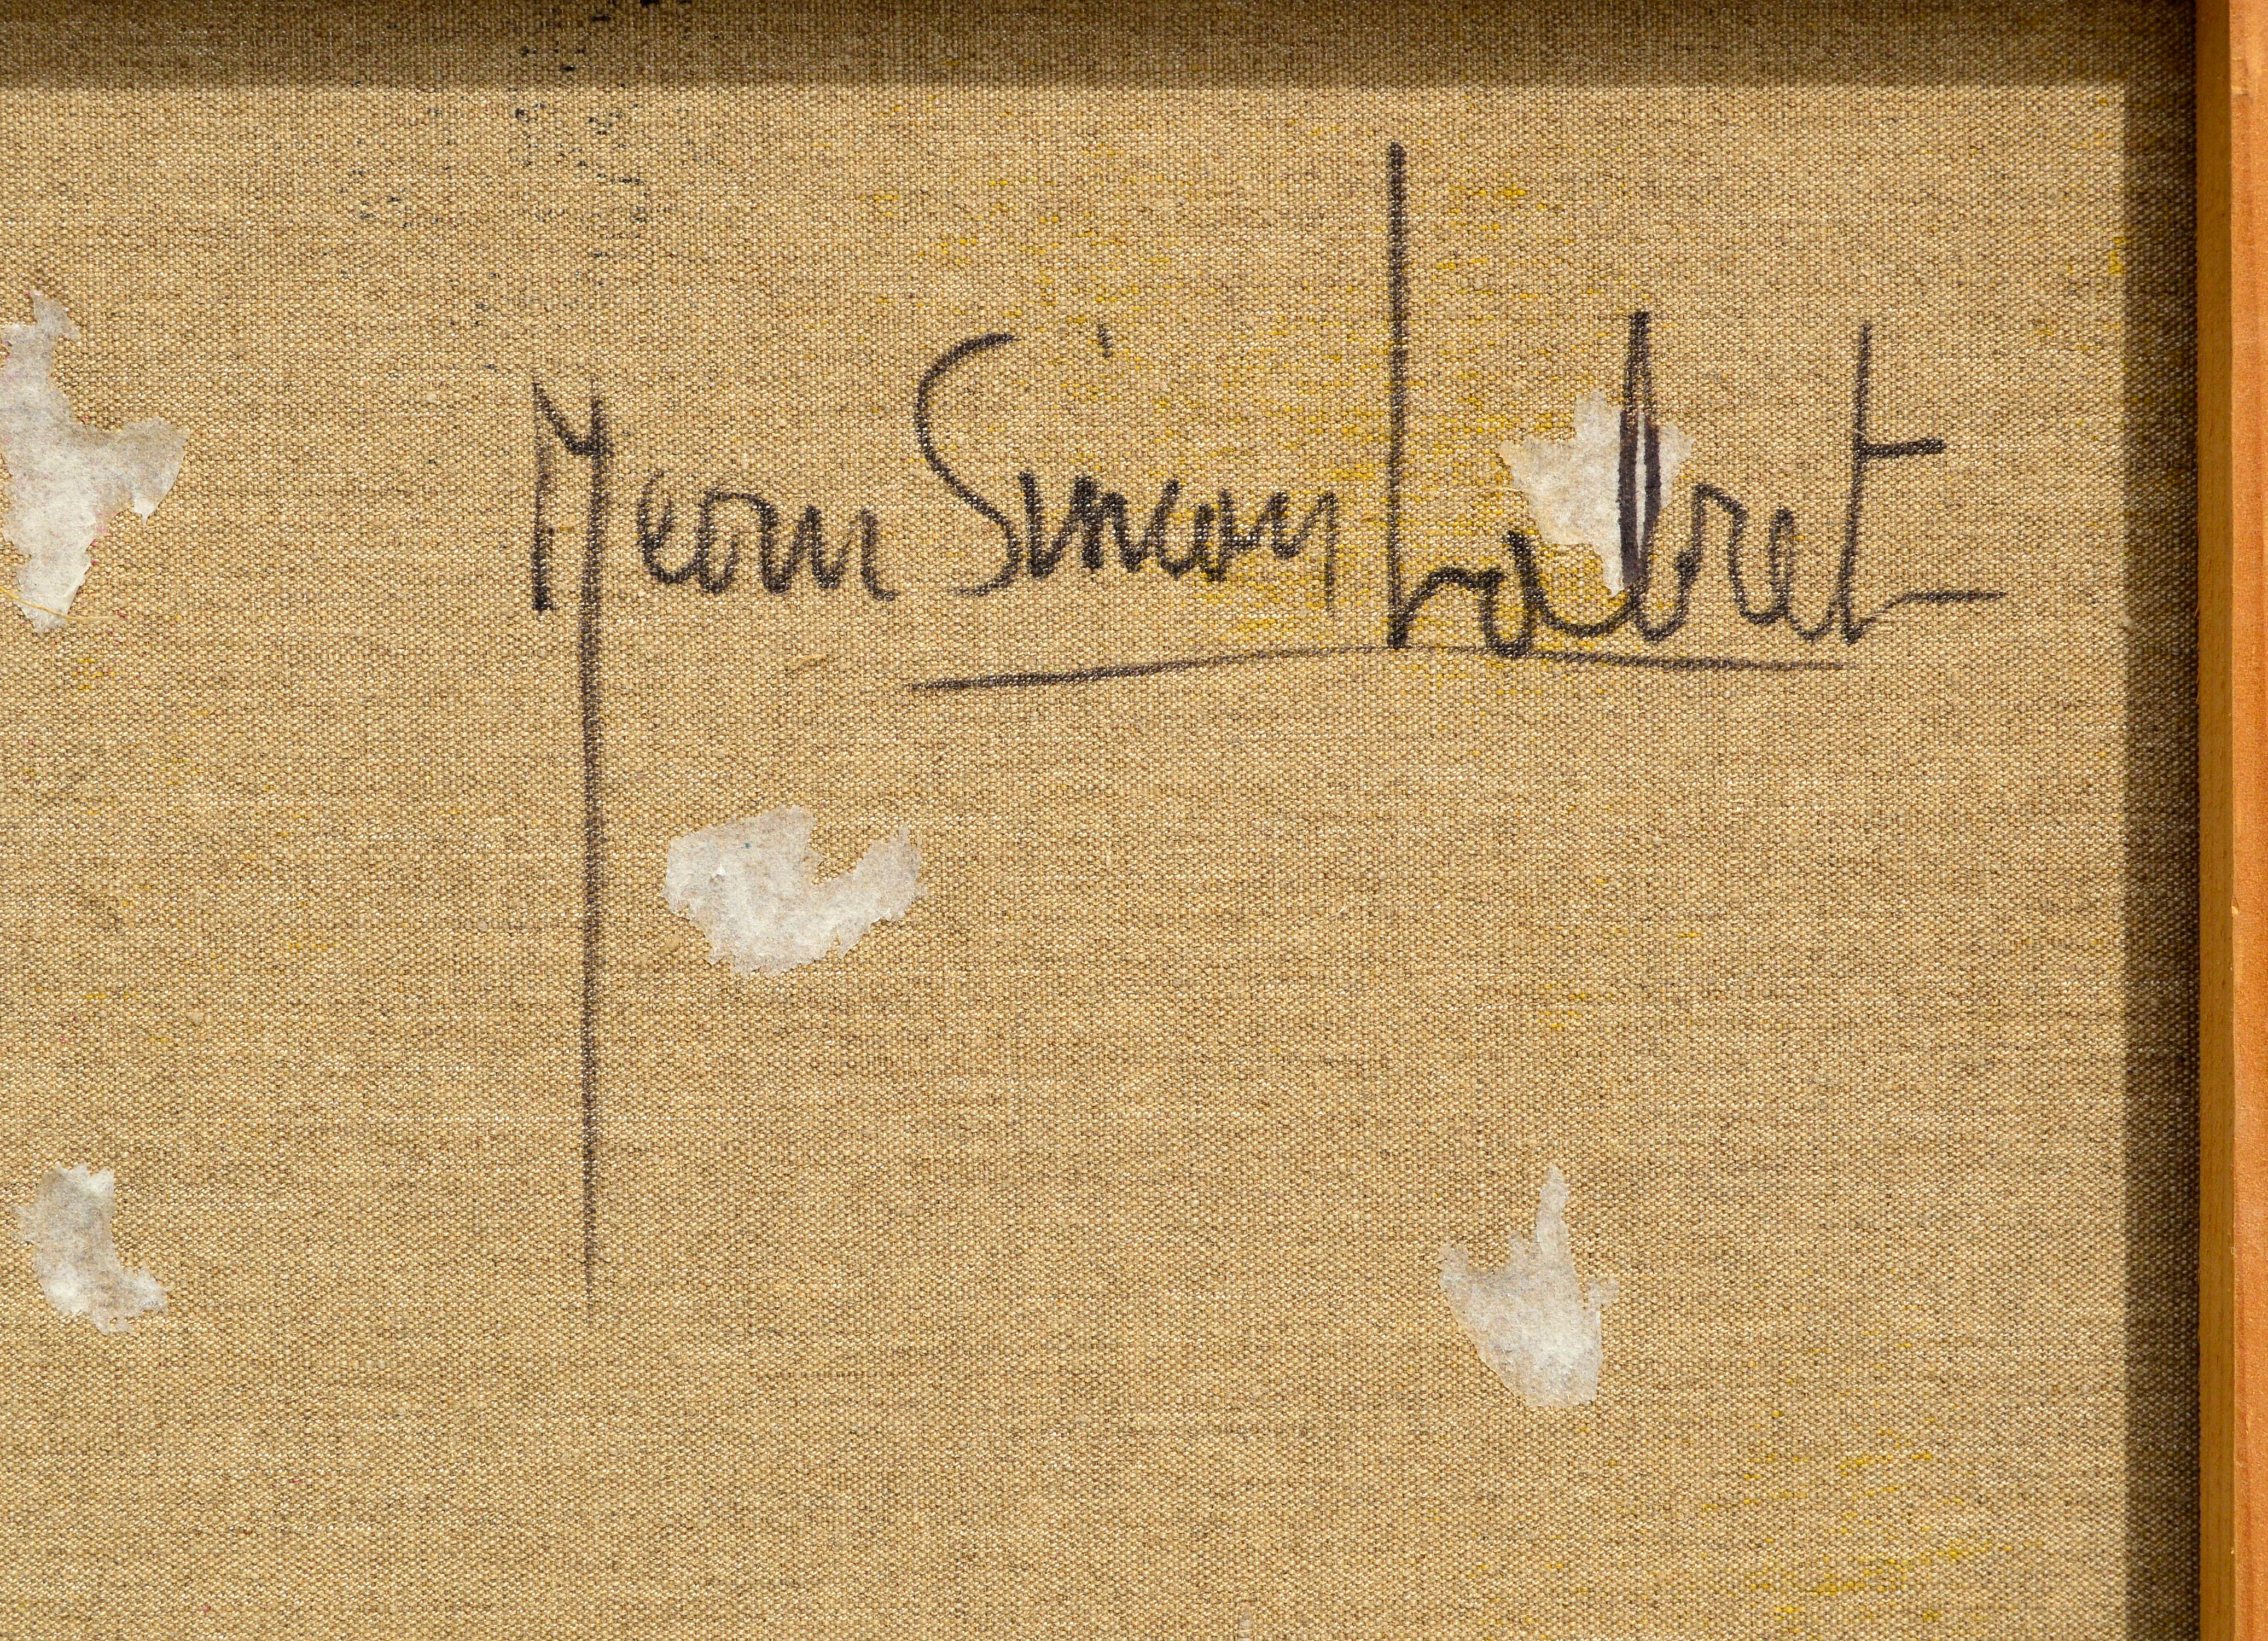 Kühnes, abstraktes Sprühbild von Jean Simon Labret (Franzose, 20. Jahrhundert). Dieses frühe Beispiel für Sprühkunst deutet auf die aufkommende Straßenkunstszene in Frankreich hin, die in den frühen 1970er Jahren begann. Signiert, datiert und